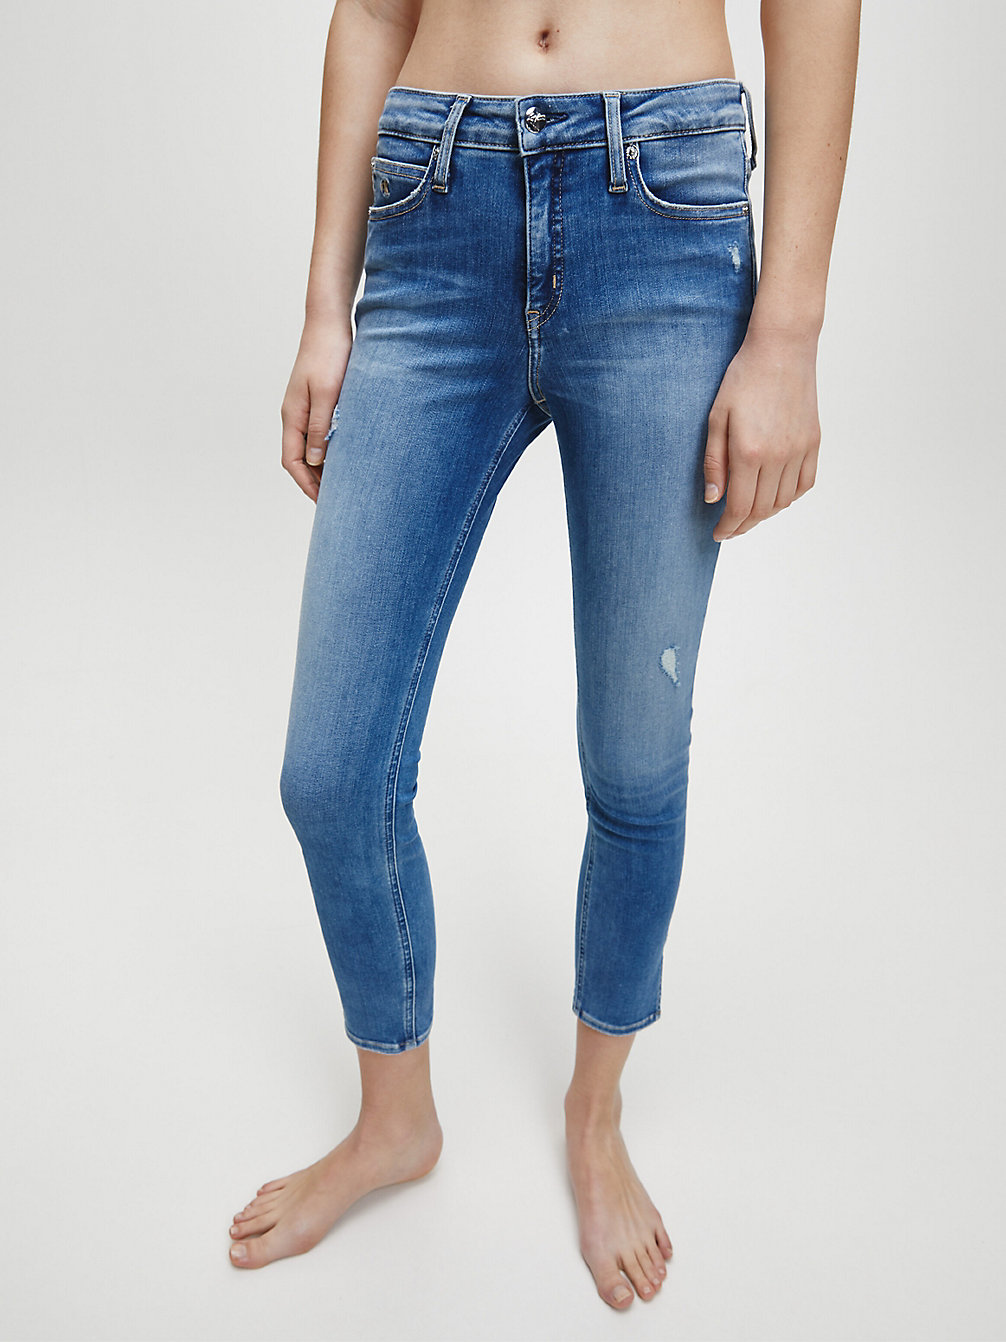 AB039 LIGHT BLUE DSTR RIVET Super Skinny Enkellange Jeans undefined dames Calvin Klein